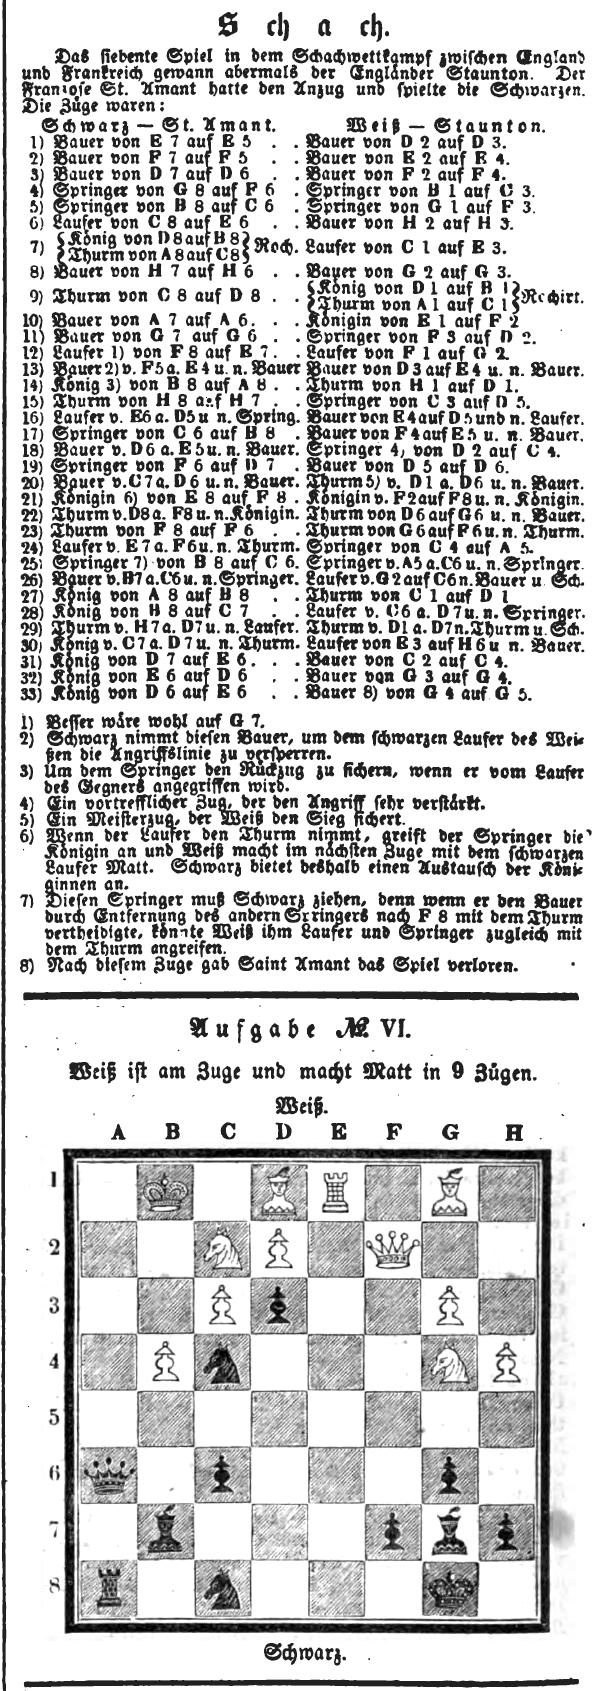 1844.01.06-01 Leipzig Illustrirte Zeitung.jpg